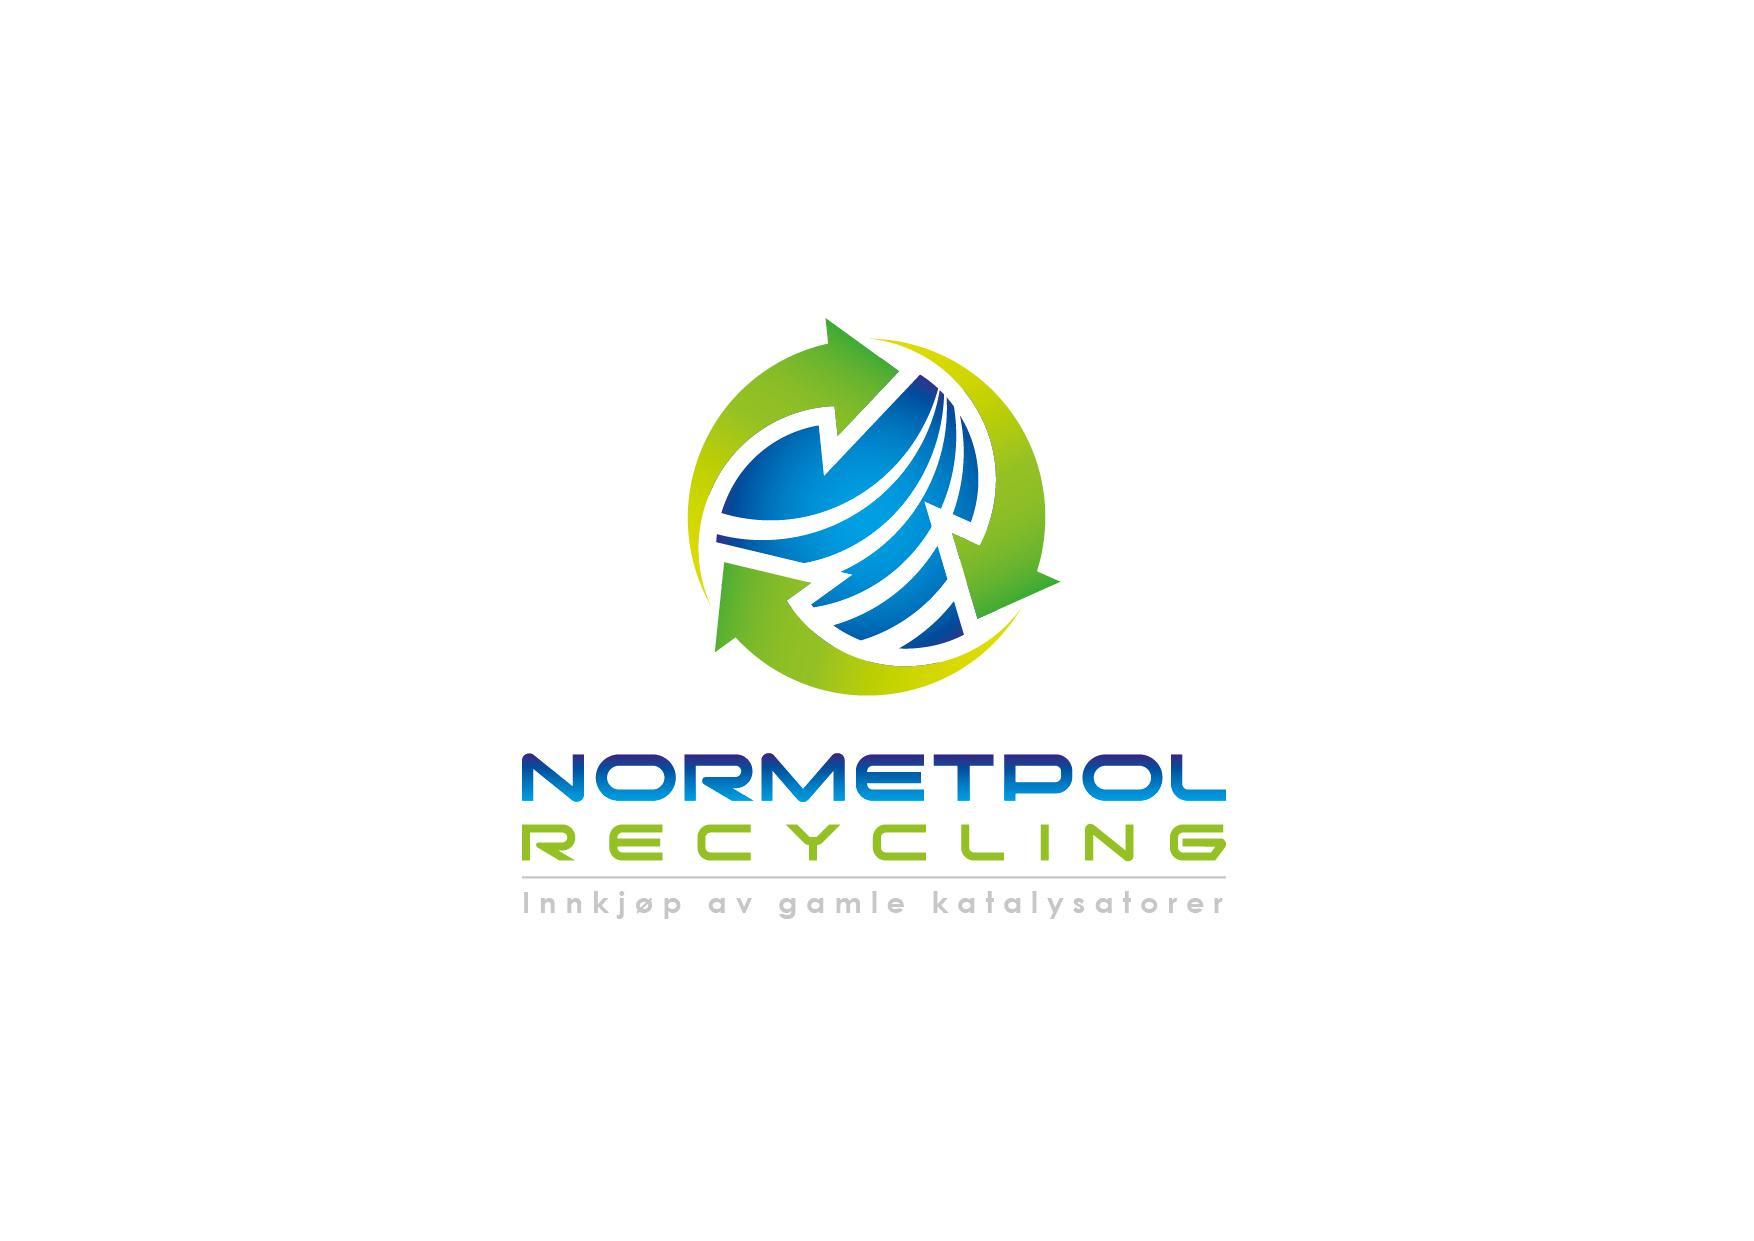 NORMETPOL RECYCLING ✩ Innkjøp av gamle katalysatorer og partikkelfilter i Norge Gjenvinning, Avfallsbehandling, Ørsta - 5